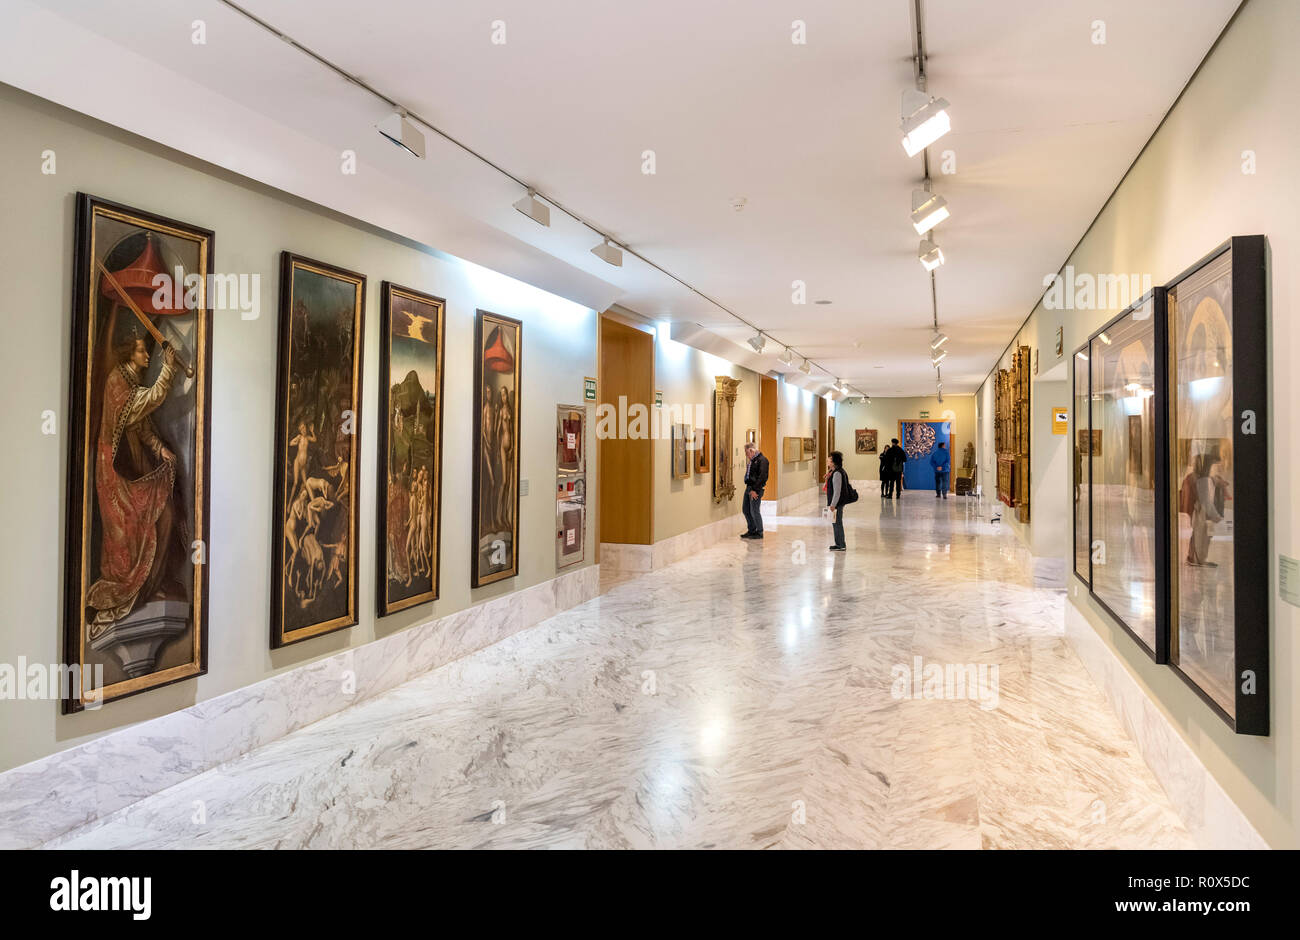 Interior of the Museo de Bellas Artes (Fine Arts Museum), Valencia, Spain Stock Photo